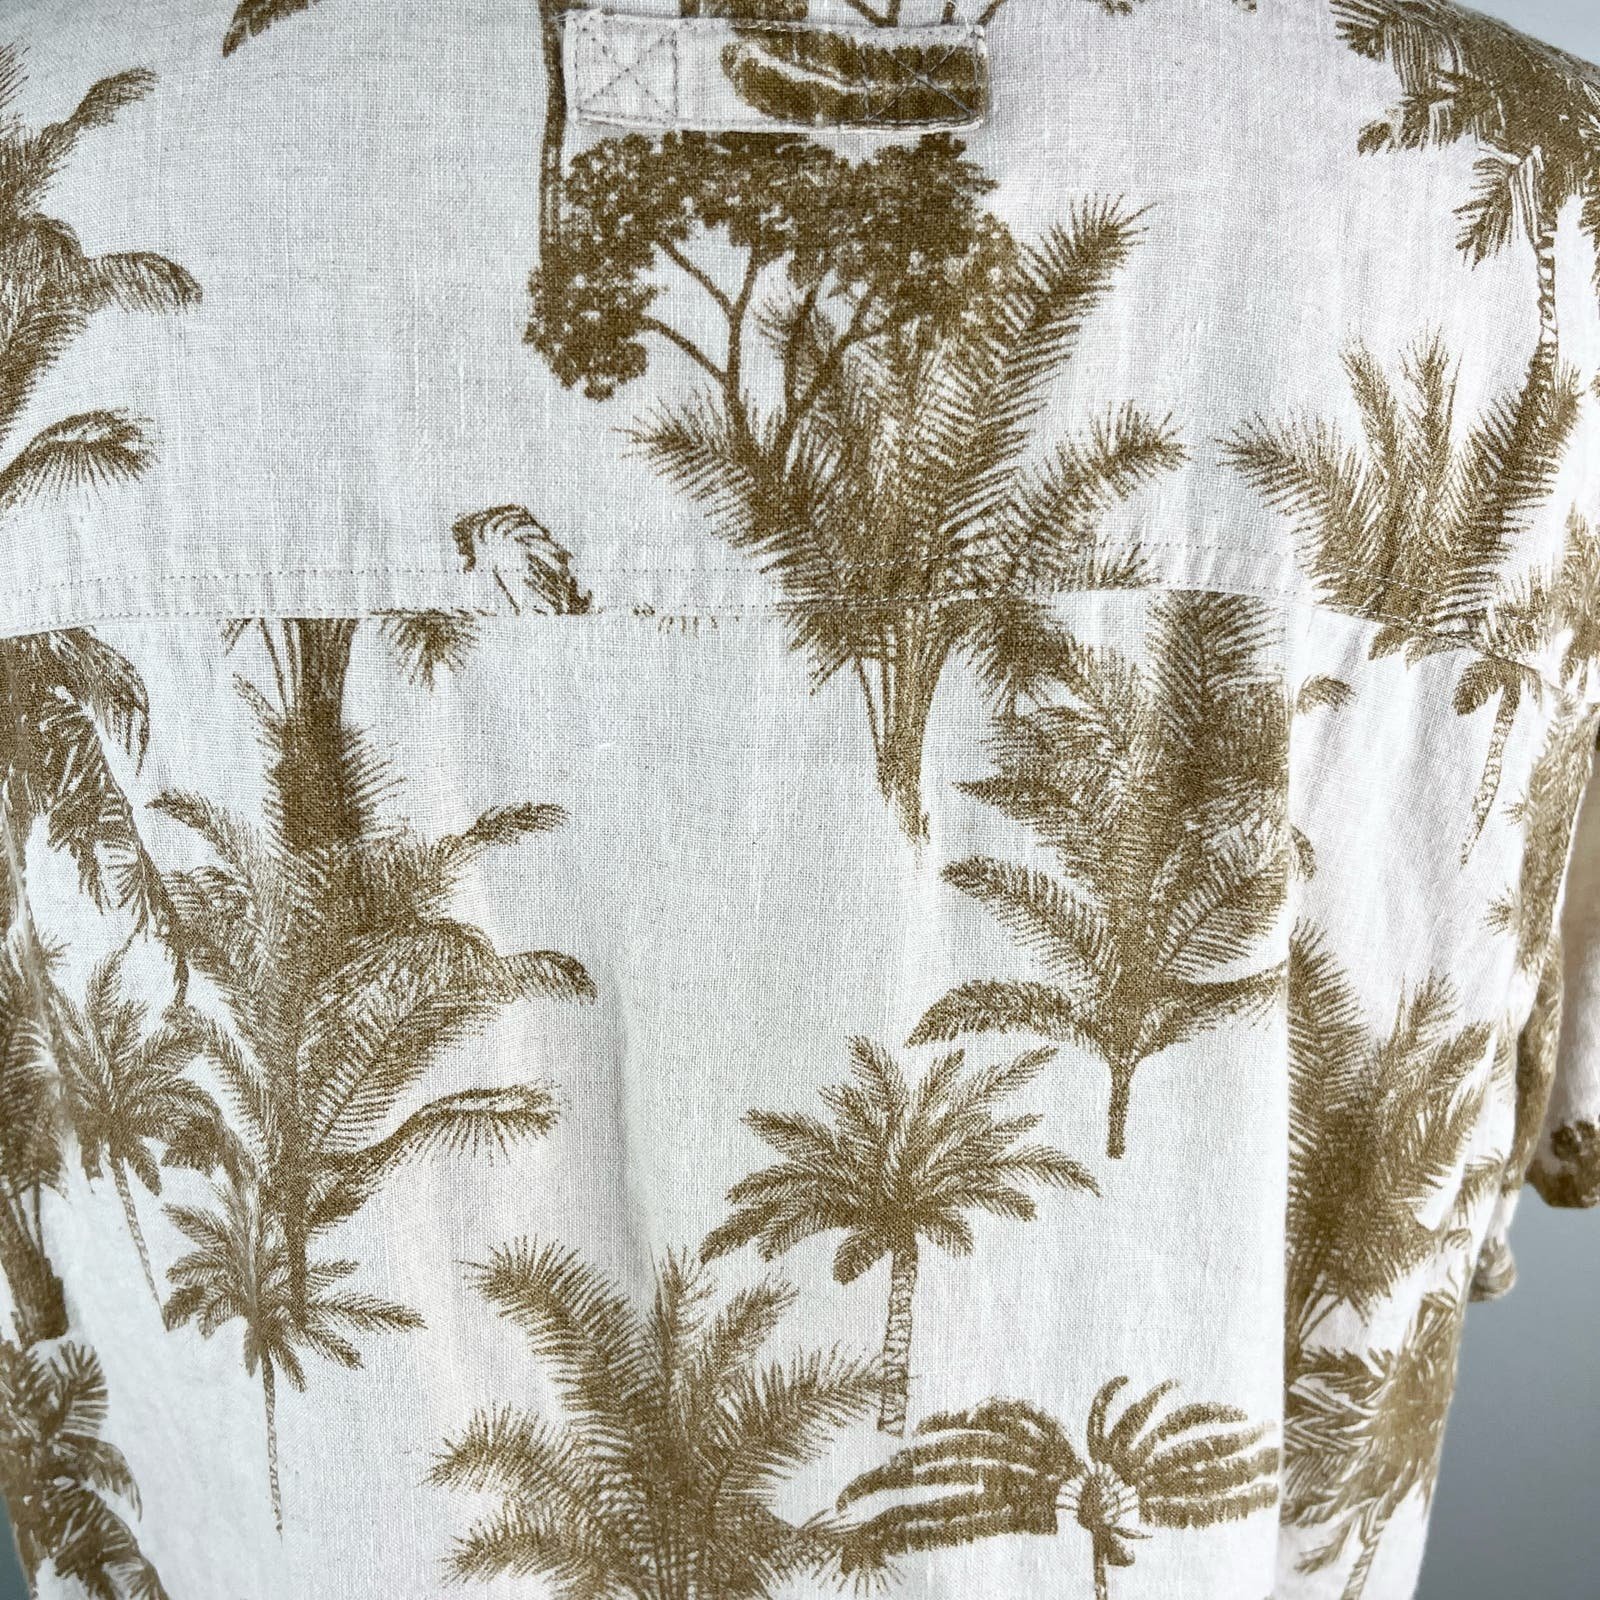 Cheap Havana Jack´s Cafe Hawaiian Button Down Shirt Linen XL mX004k7JS all for you